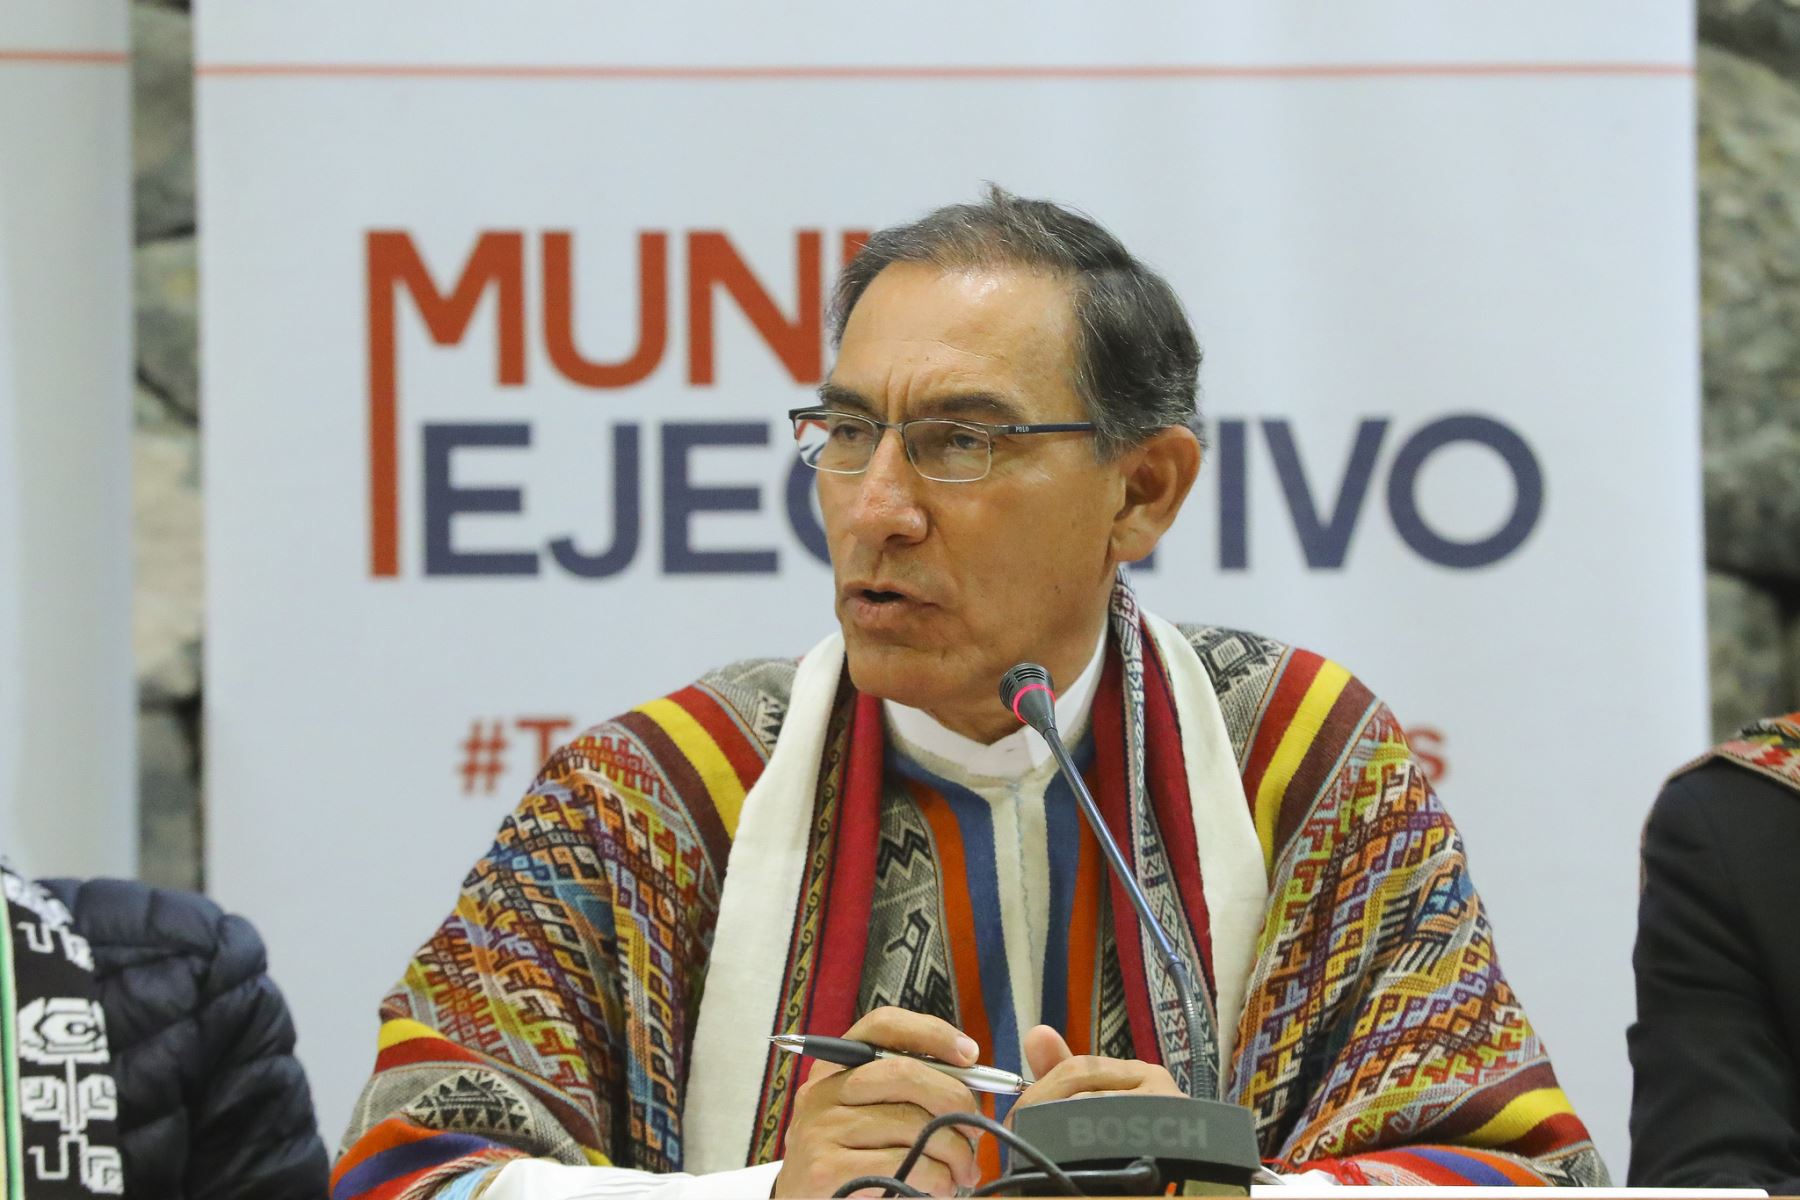 Presidente Martín Vizcarra participa en Muni Ejecutivo, en el Cusco.